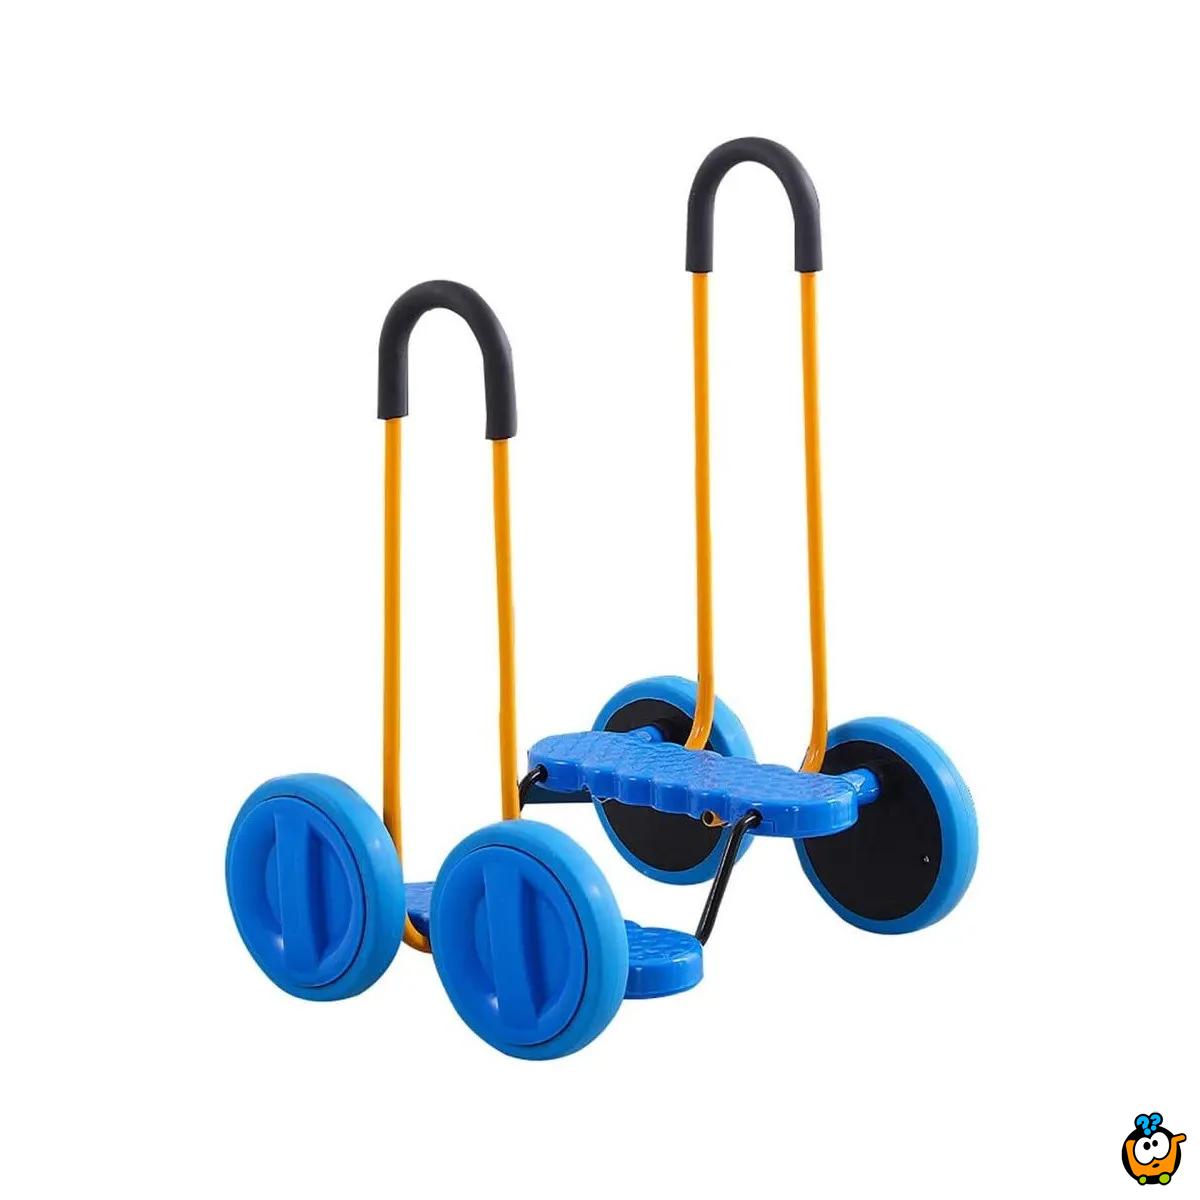 Dečije balans vozilo na četri točka za vežbanje i igru u plavoj boji